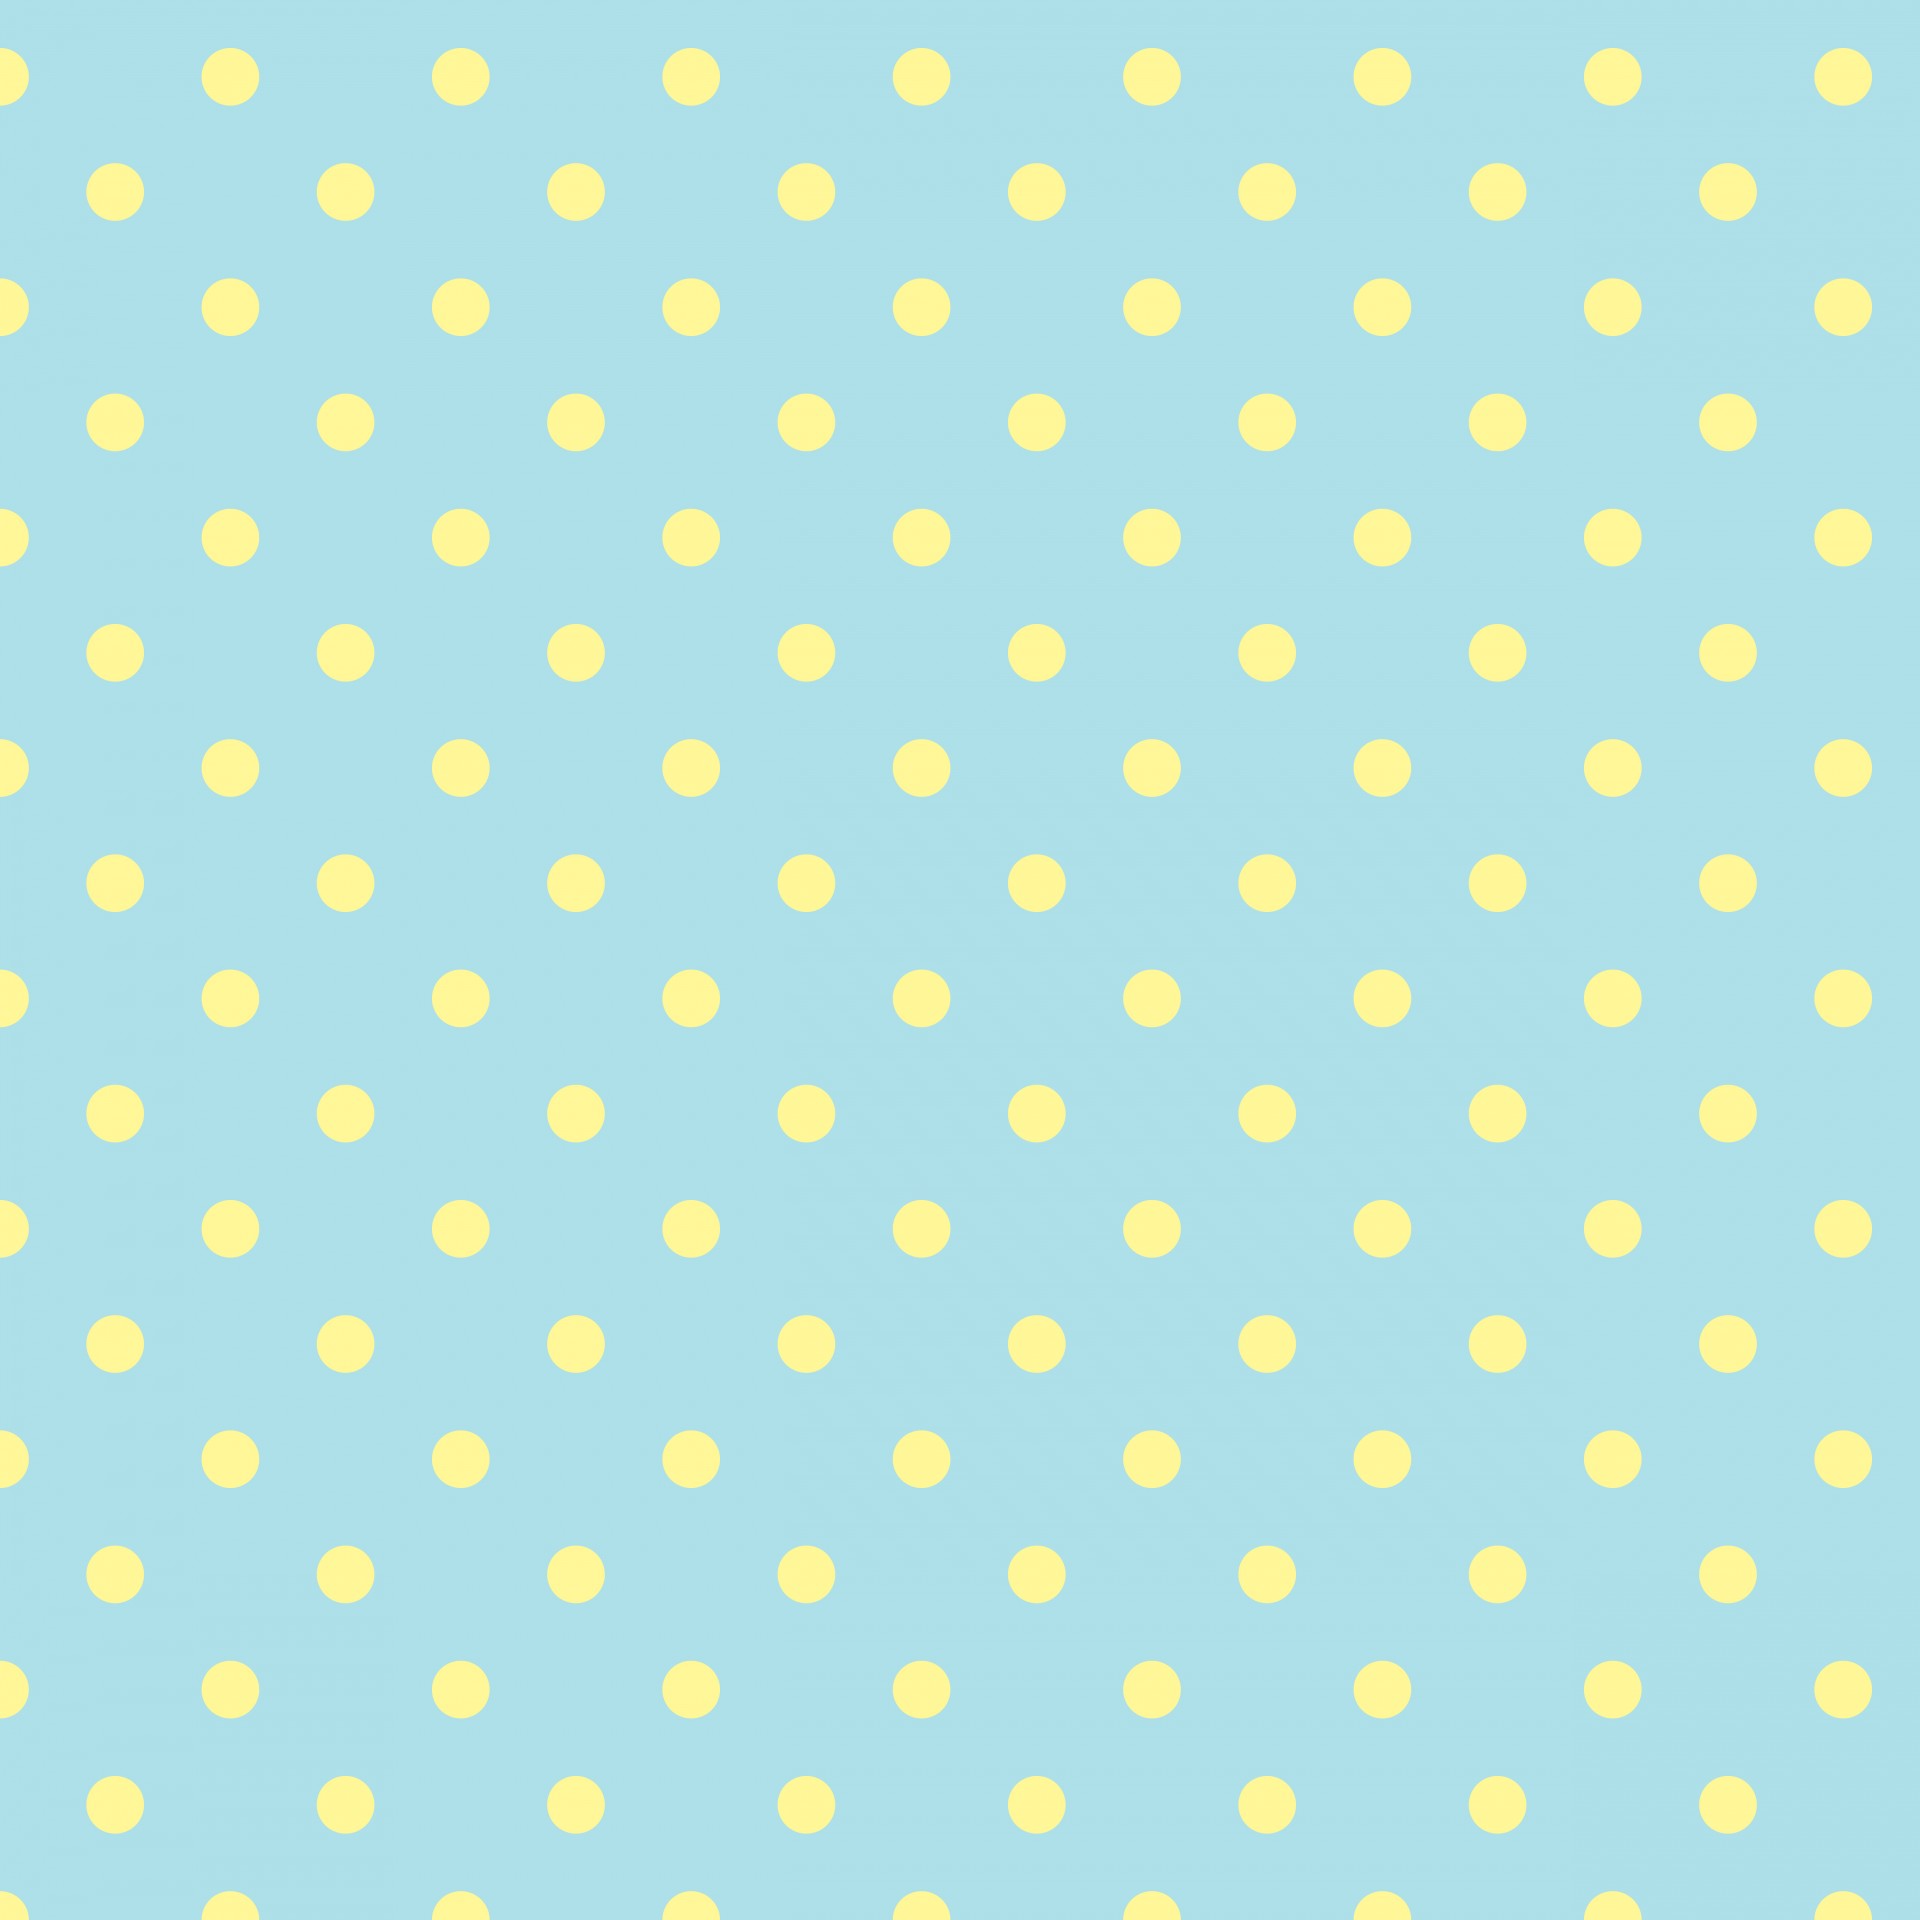 Polka Dots Blue Yellow